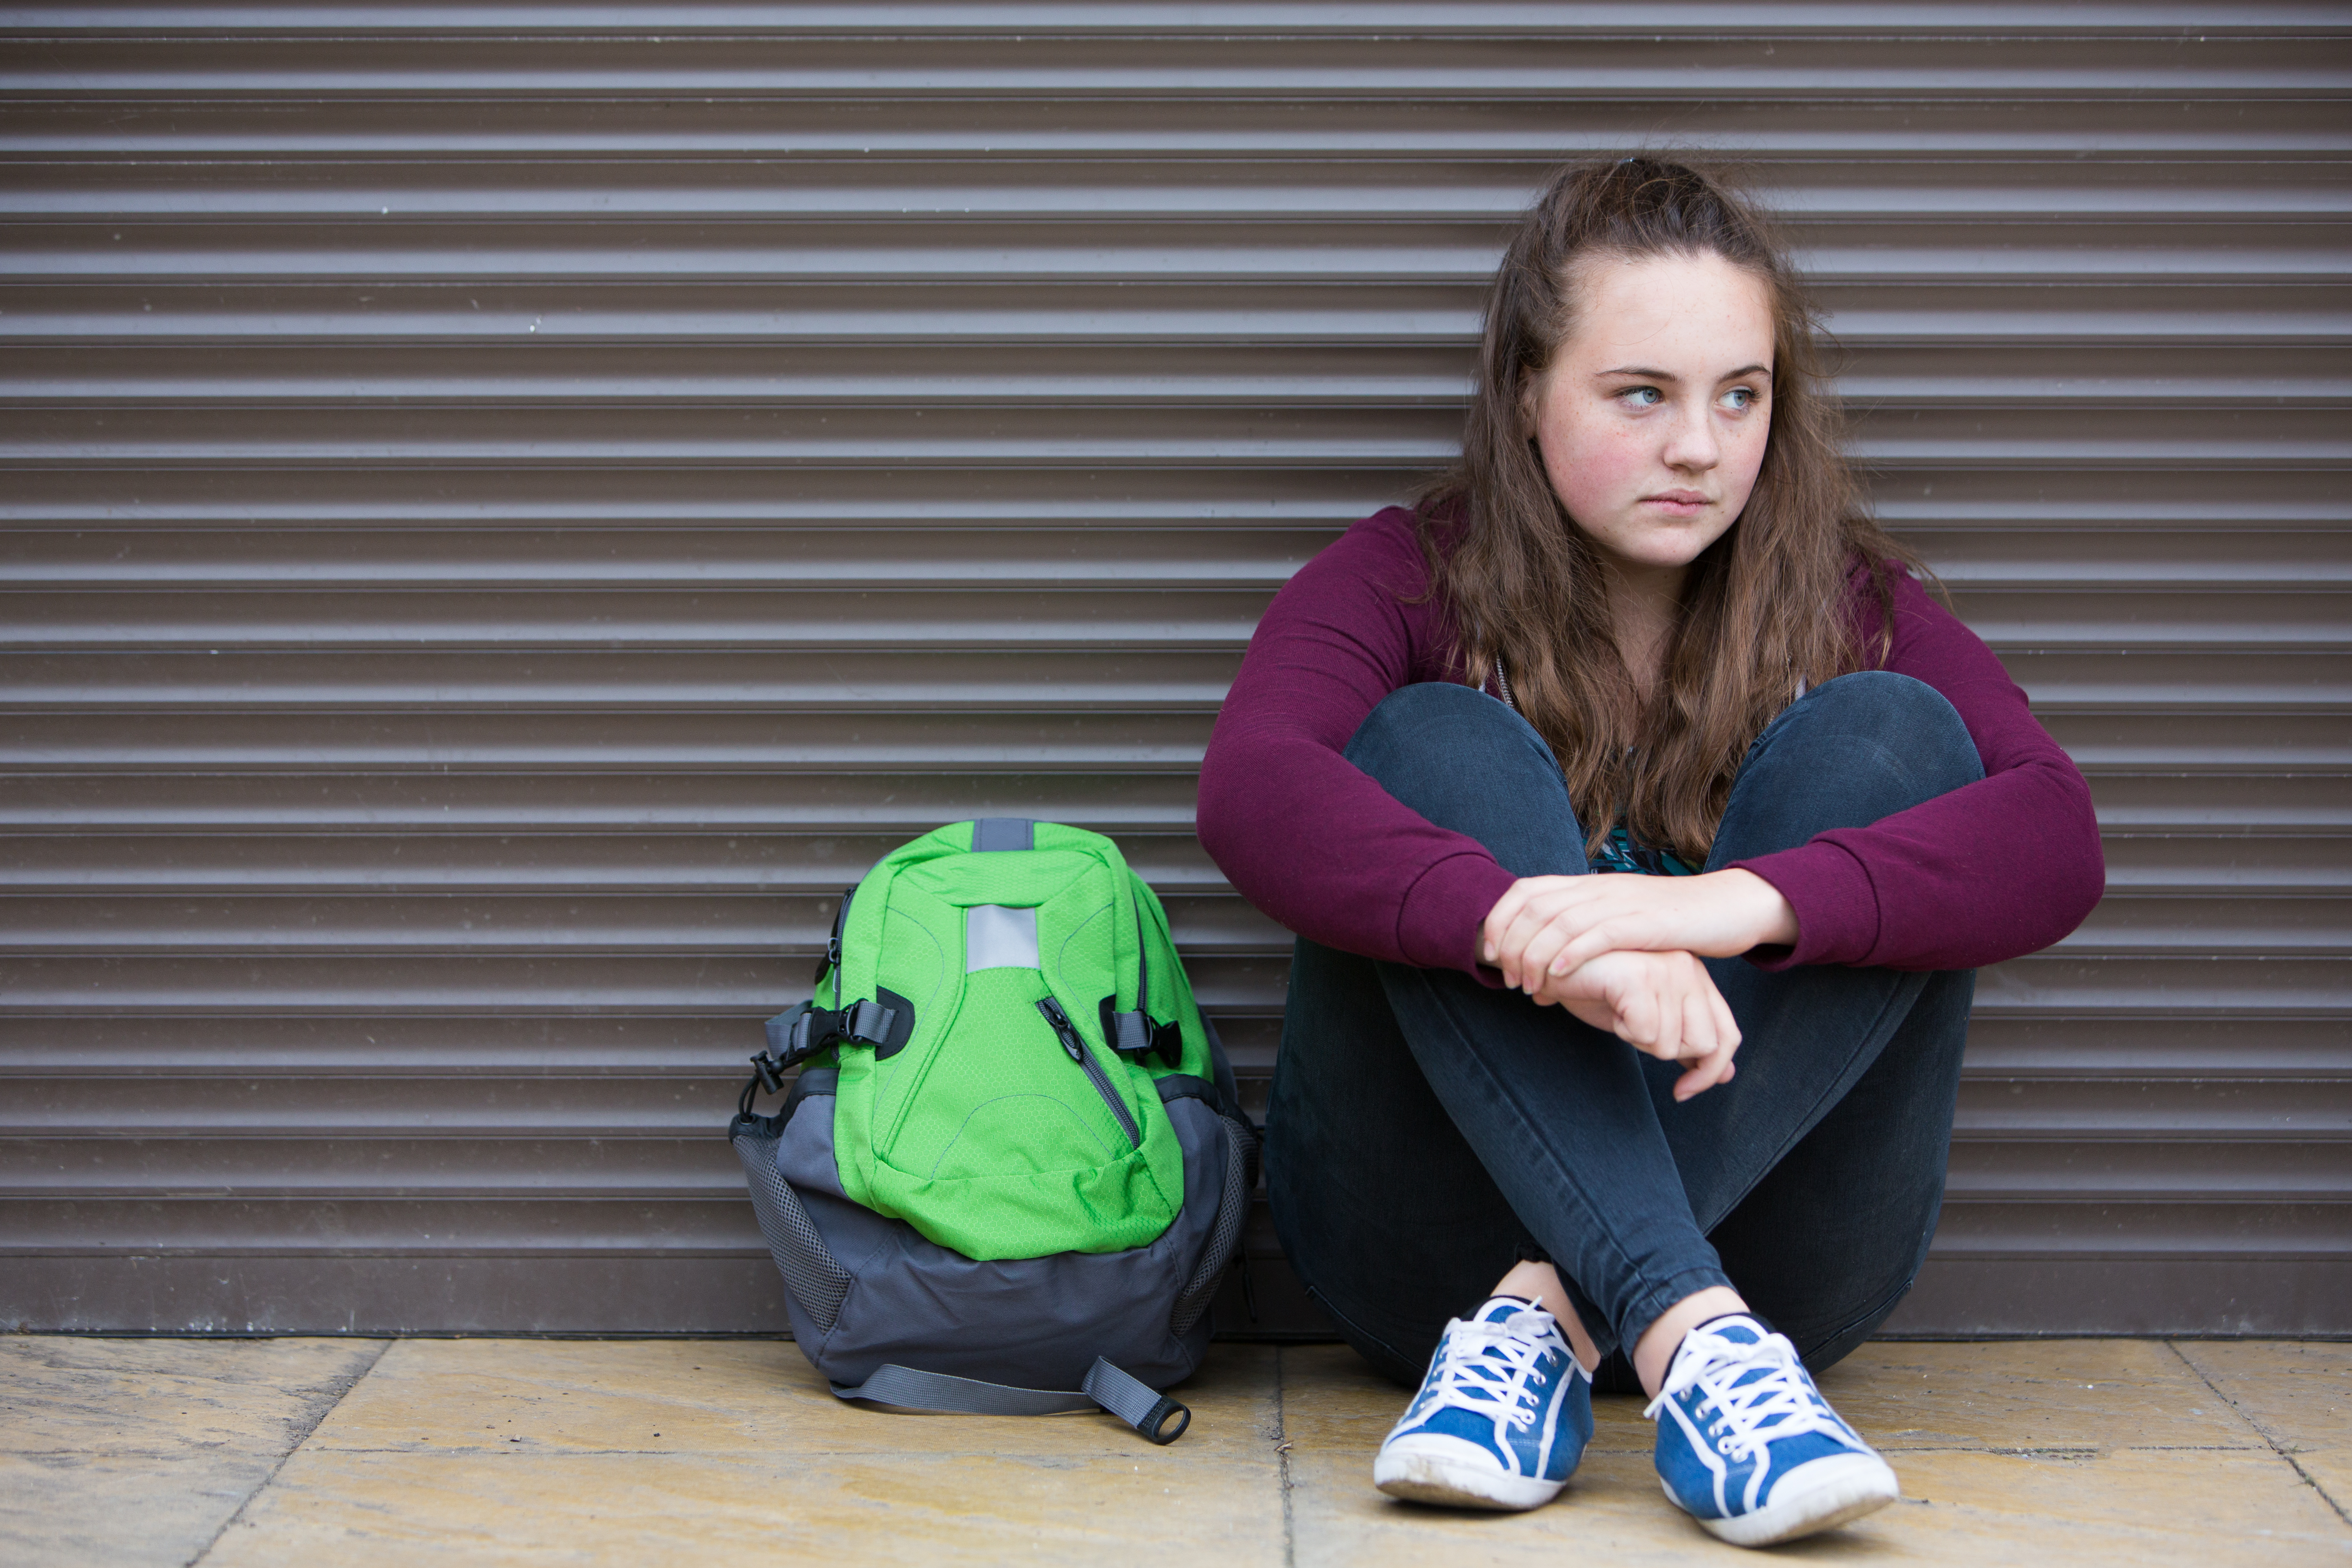 Rock Trust seeks volunteers in West Lothian to help young people avoid homelessness